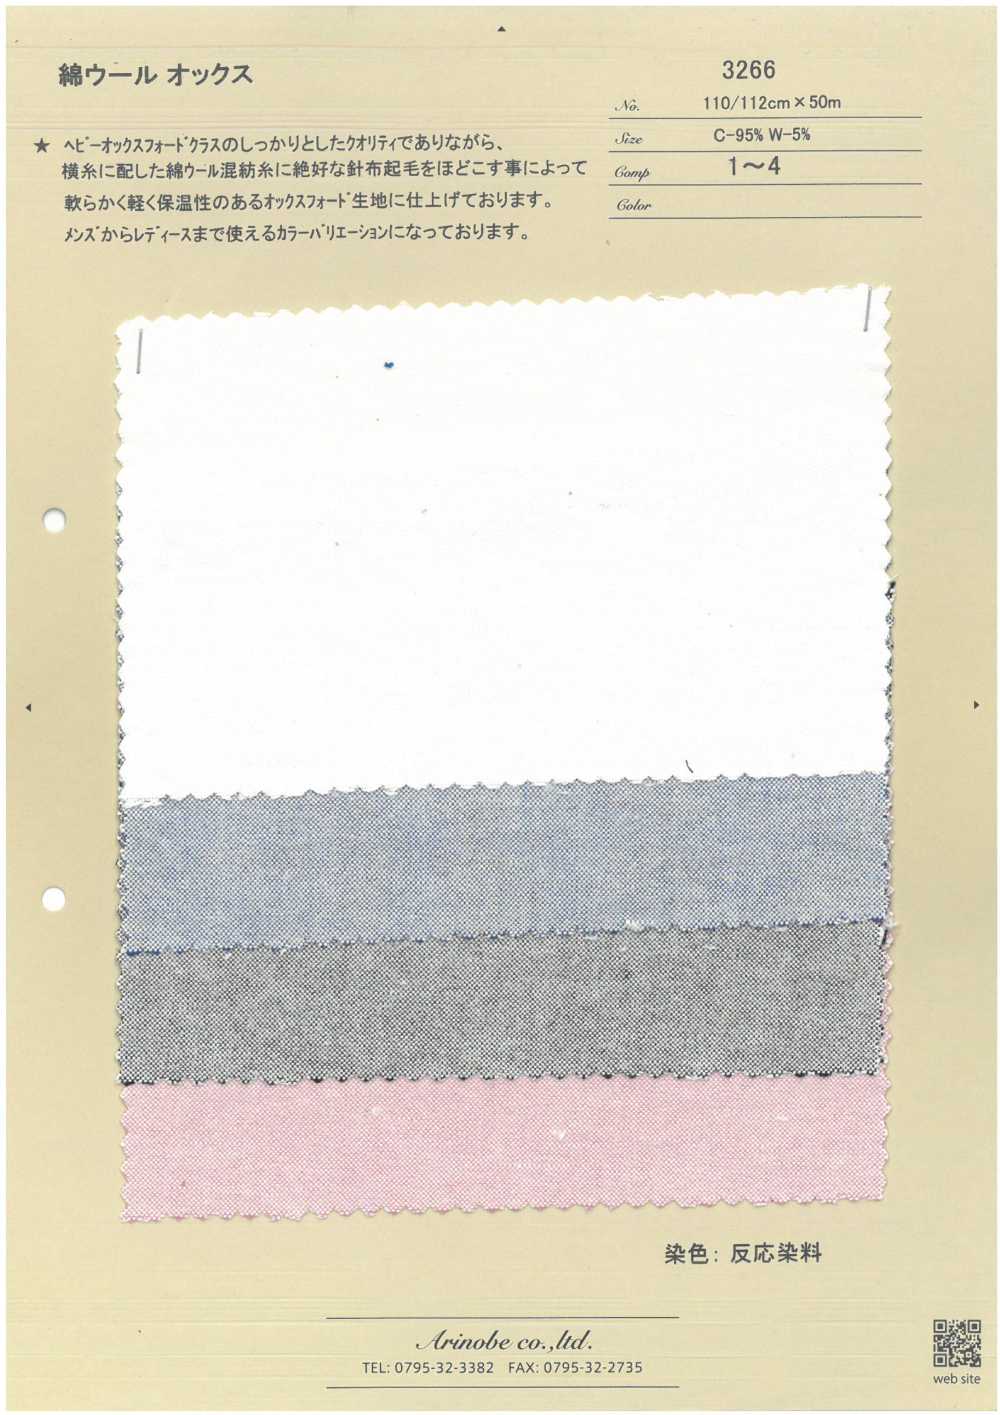 3266 Oxford En Laine De Coton[Fabrication De Textile] ARINOBE CO., LTD.